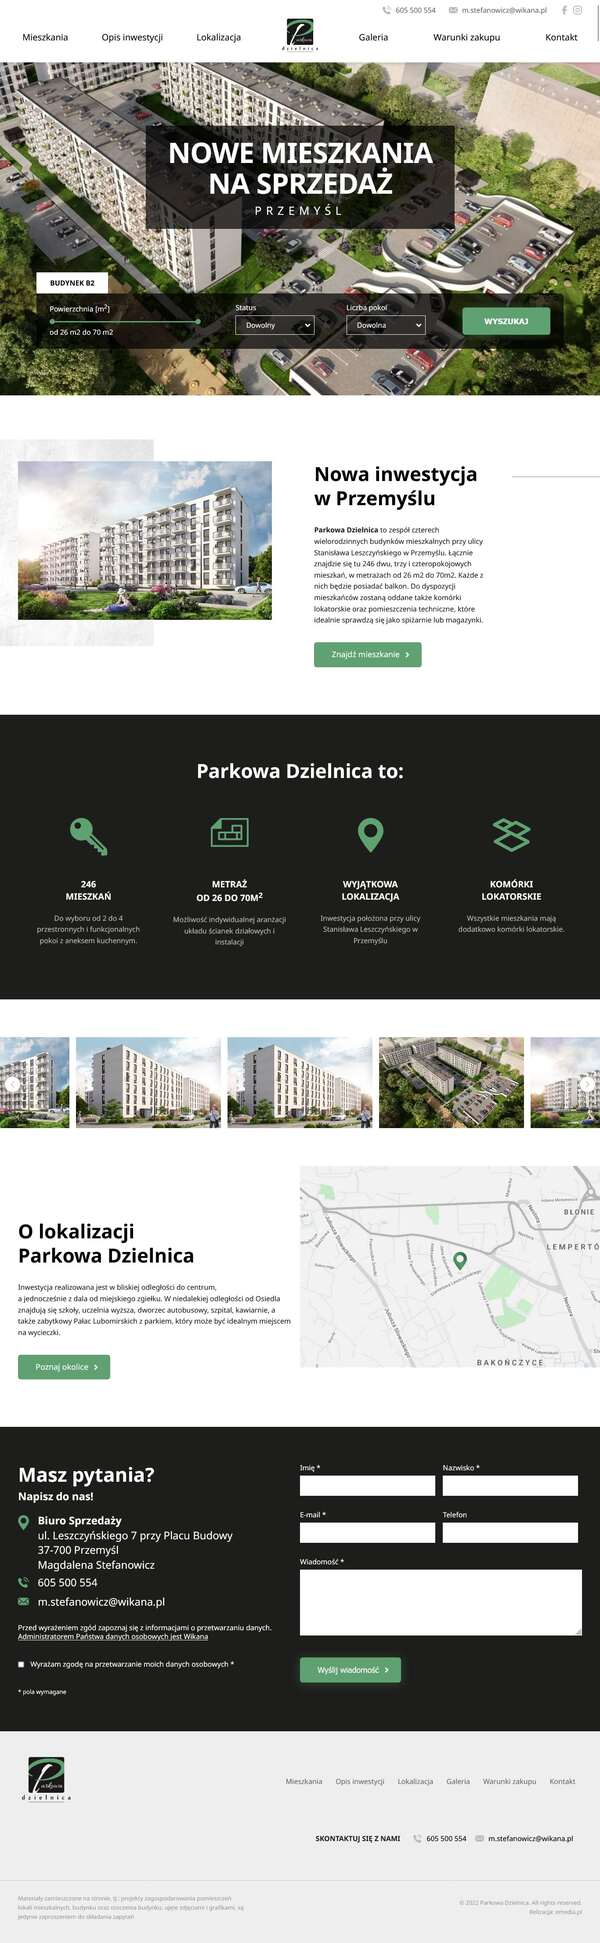 Strona internetowa parkowadzielnica.pl - zrzut desktop